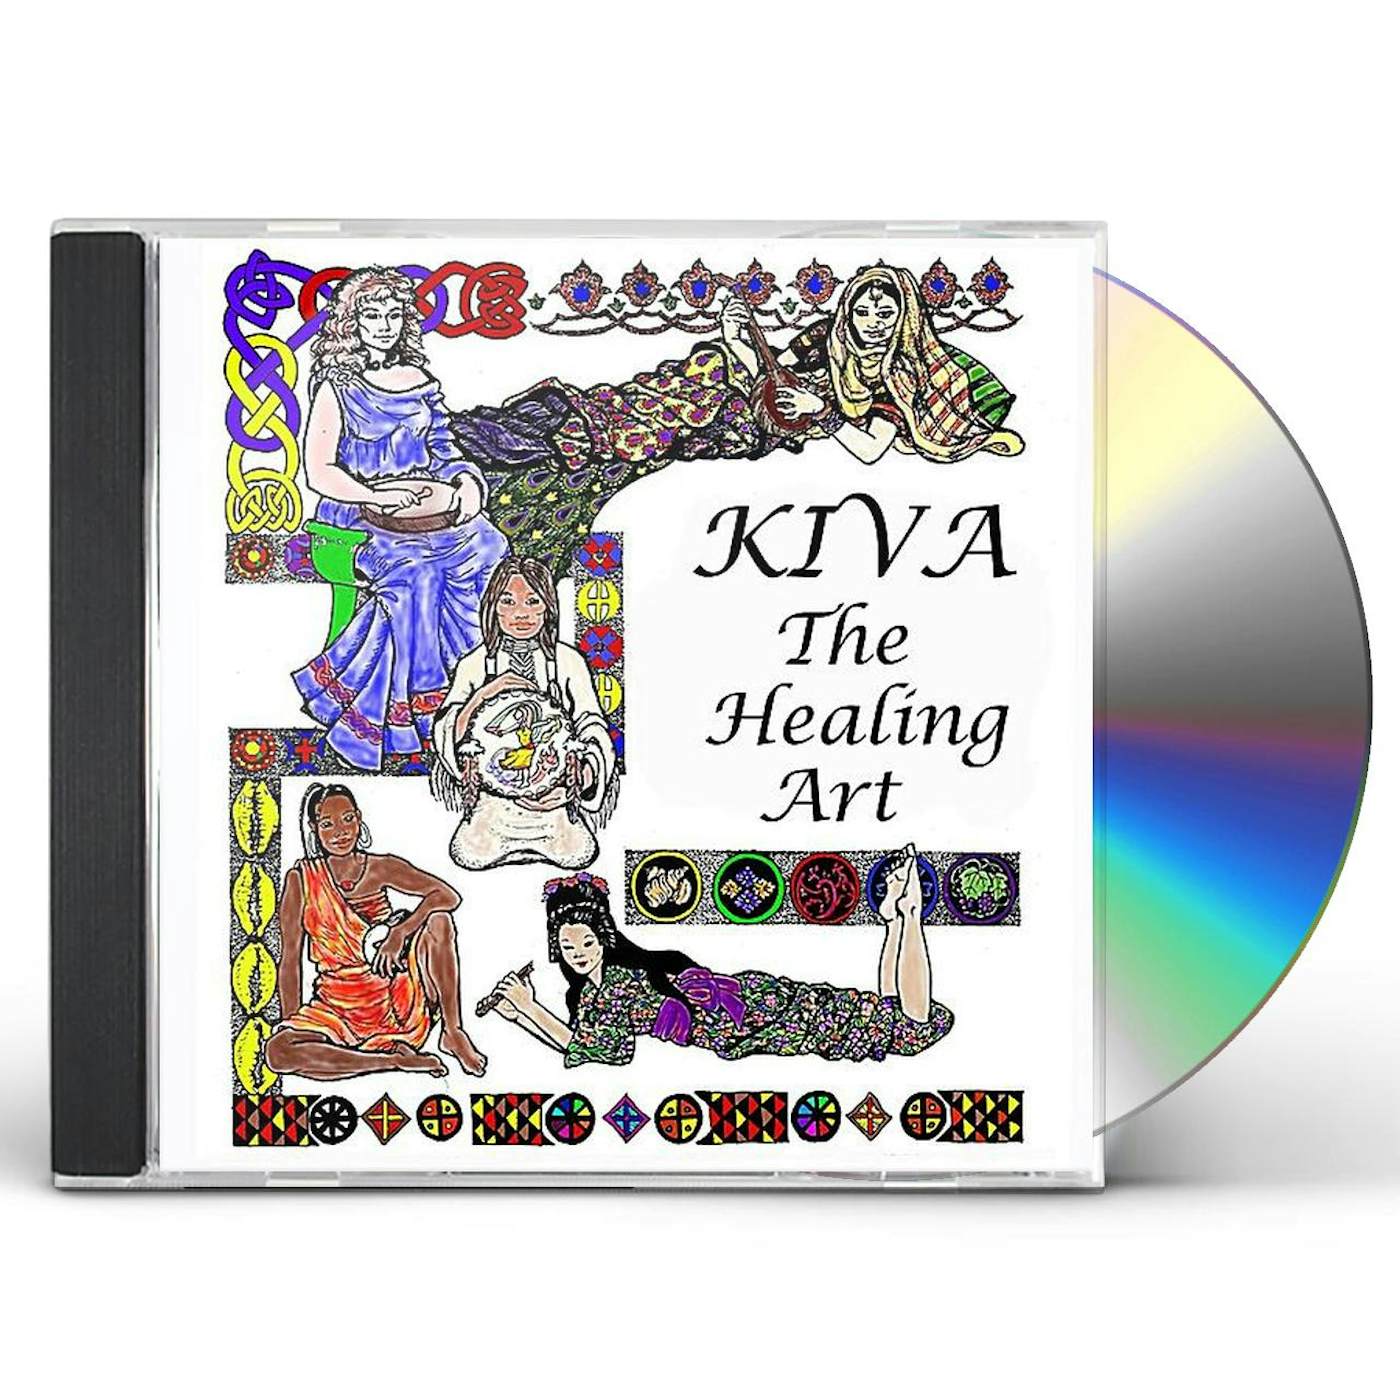 KIVA HEALING ART CD